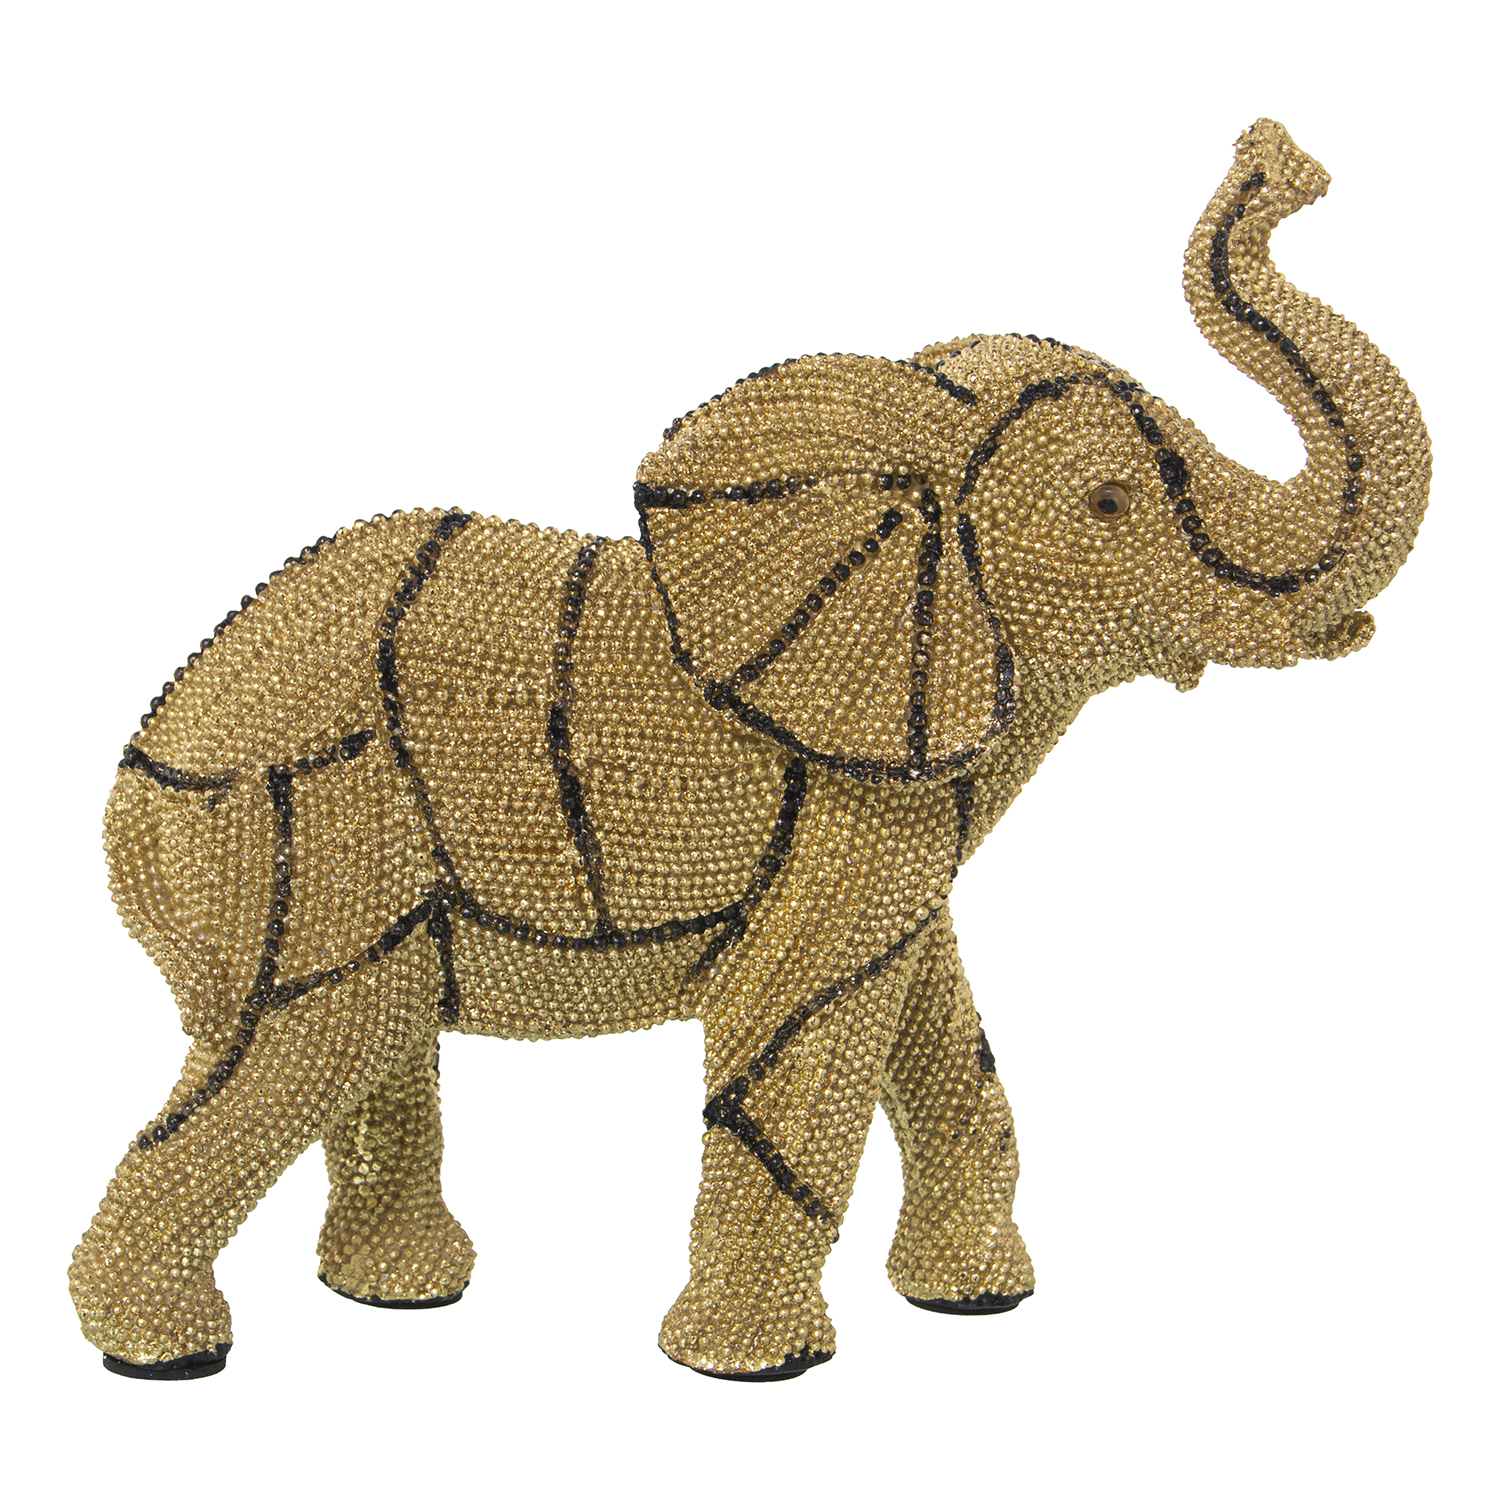 34191-elefante-kenia.gif